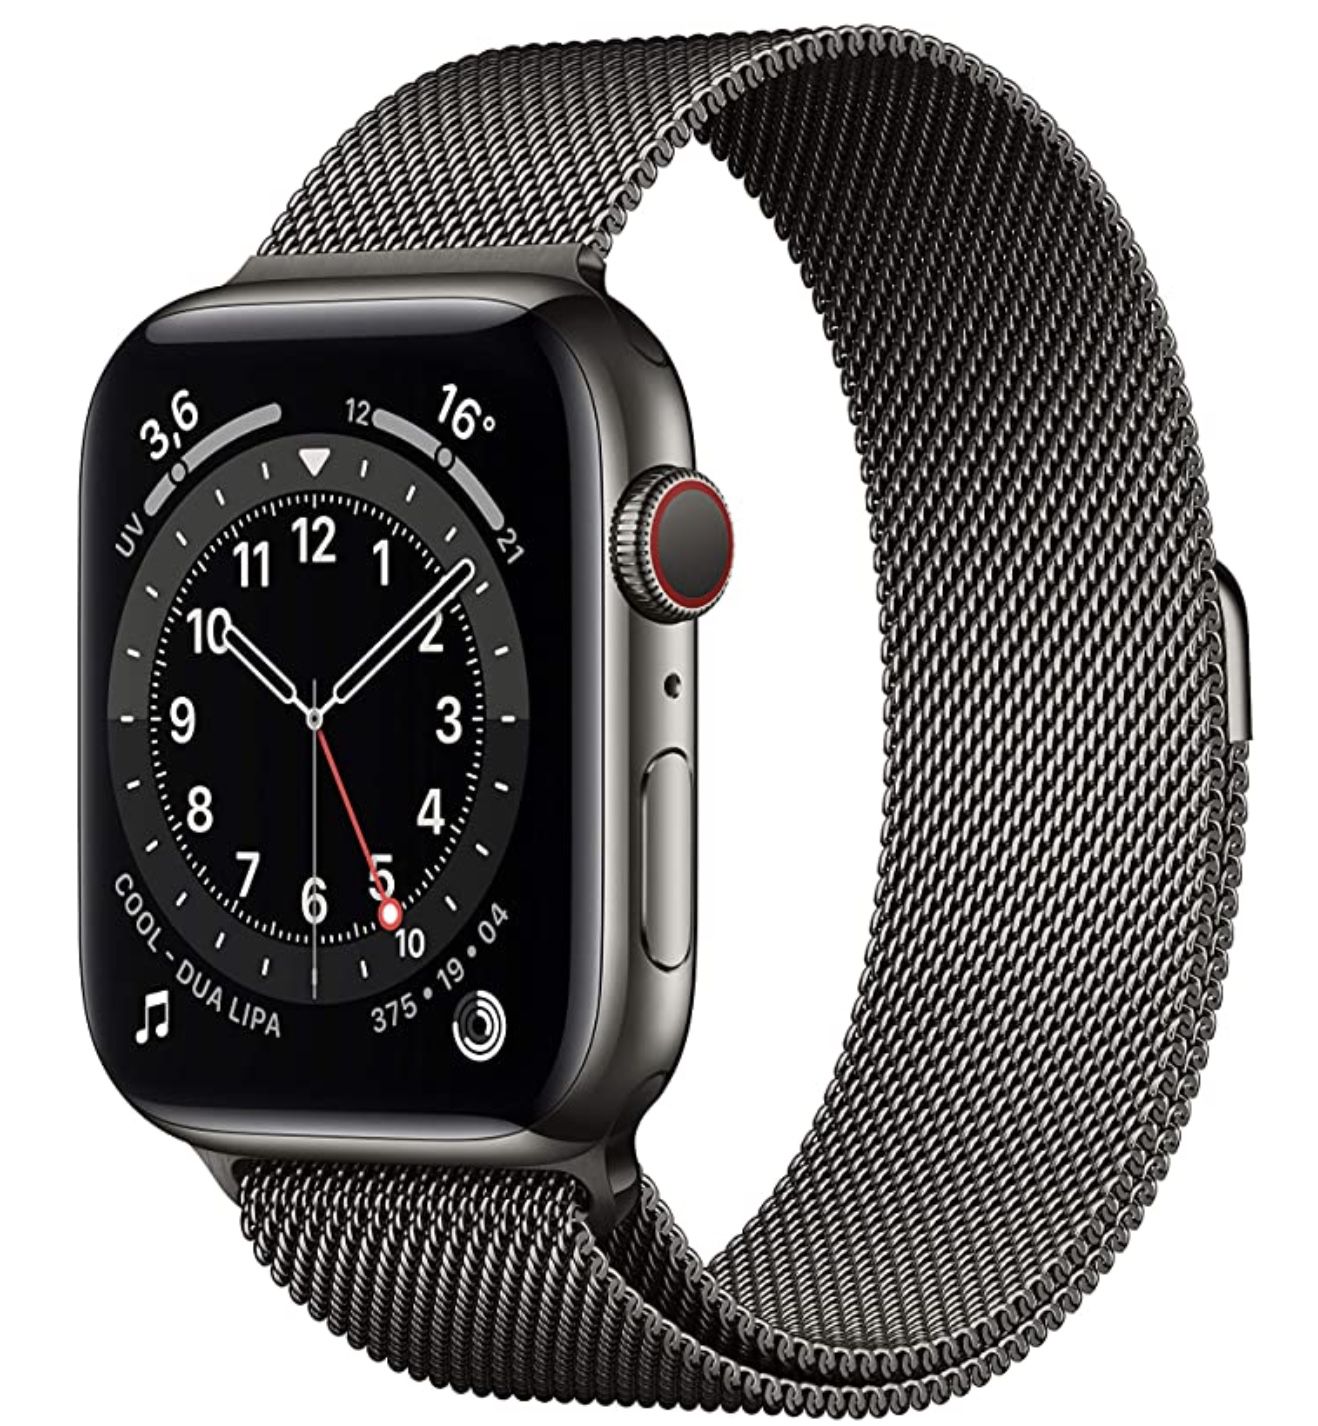 Apple Watch Series 6 LTE 44mm Edelstahlgehäuse mit Milanaise Armband für 514,70€ (statt 585€)